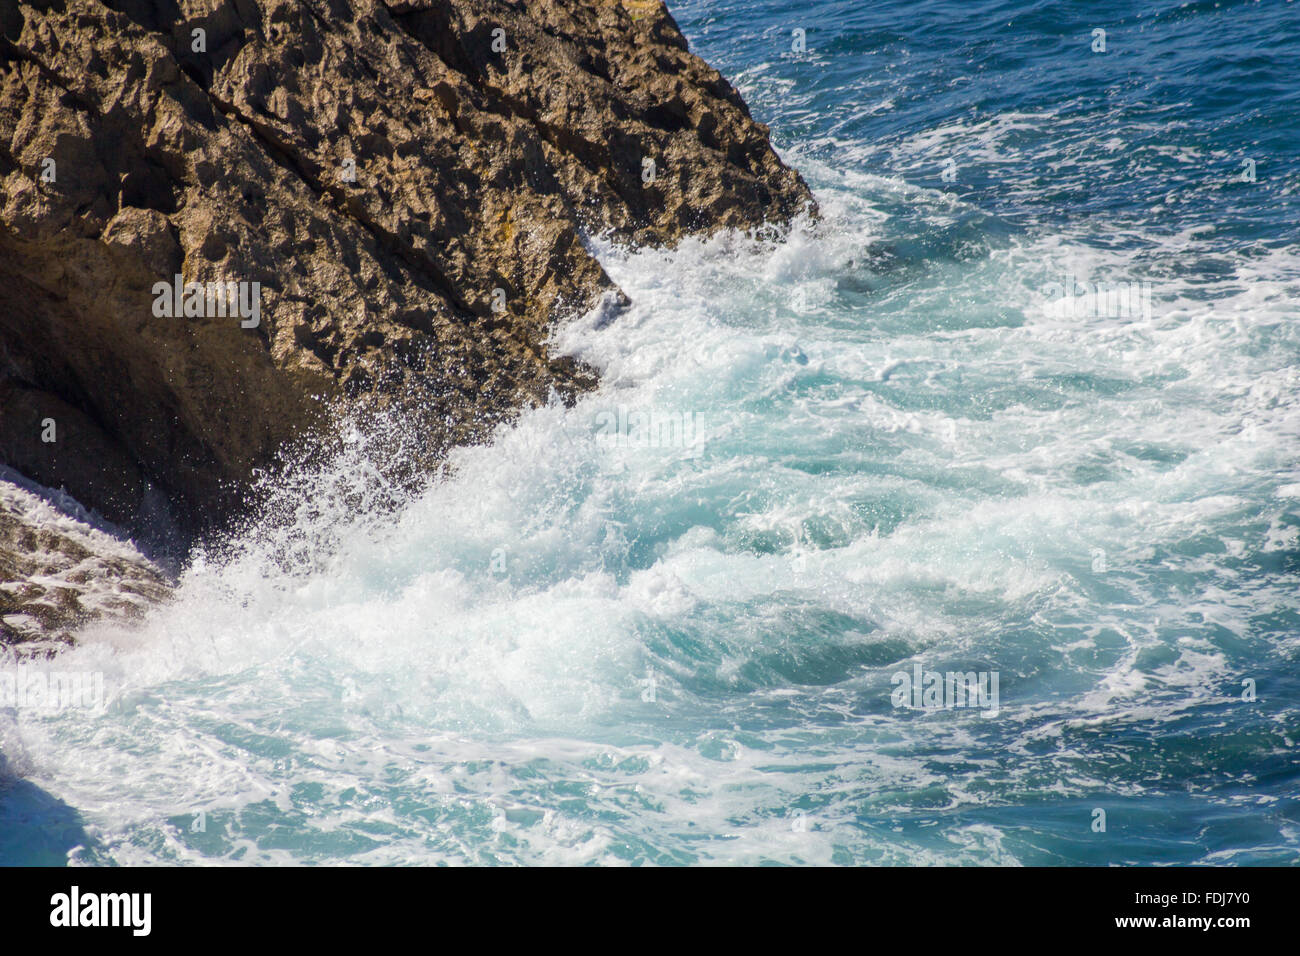 En mer, les vagues se brisant sur les rochers avec mousse blanche Banque D'Images